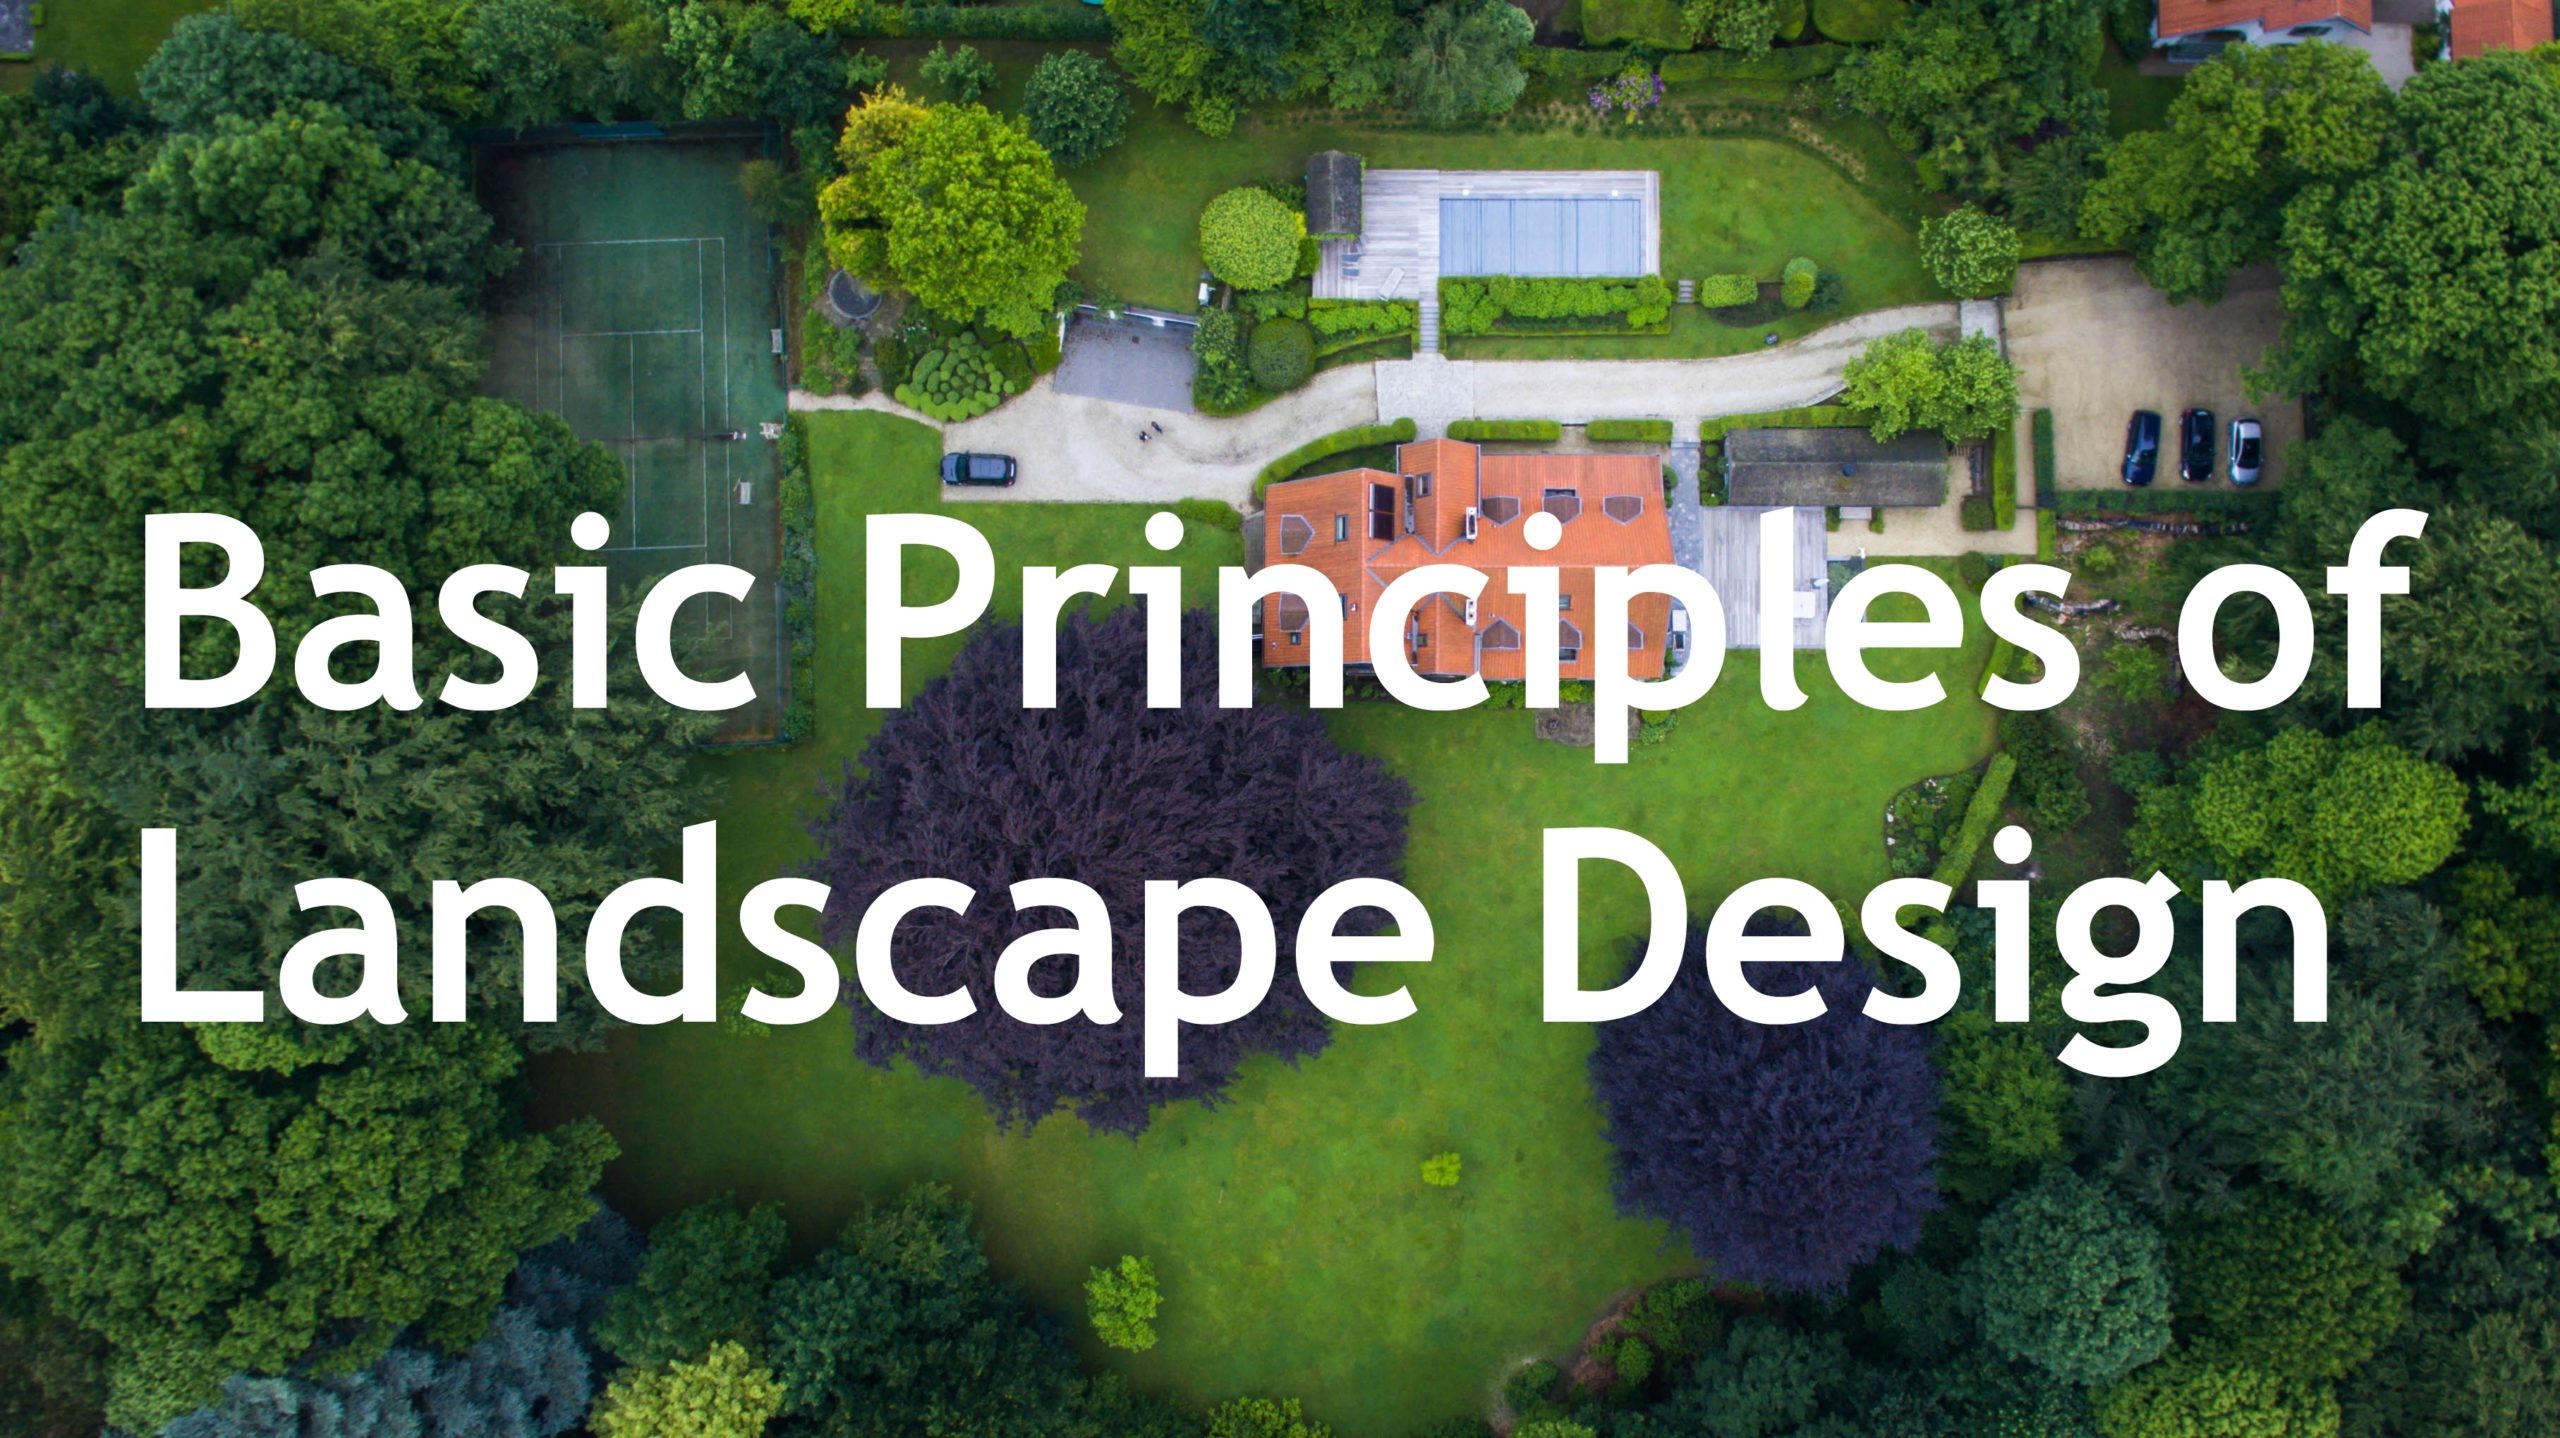 The Basic Principles Of Landscape Design